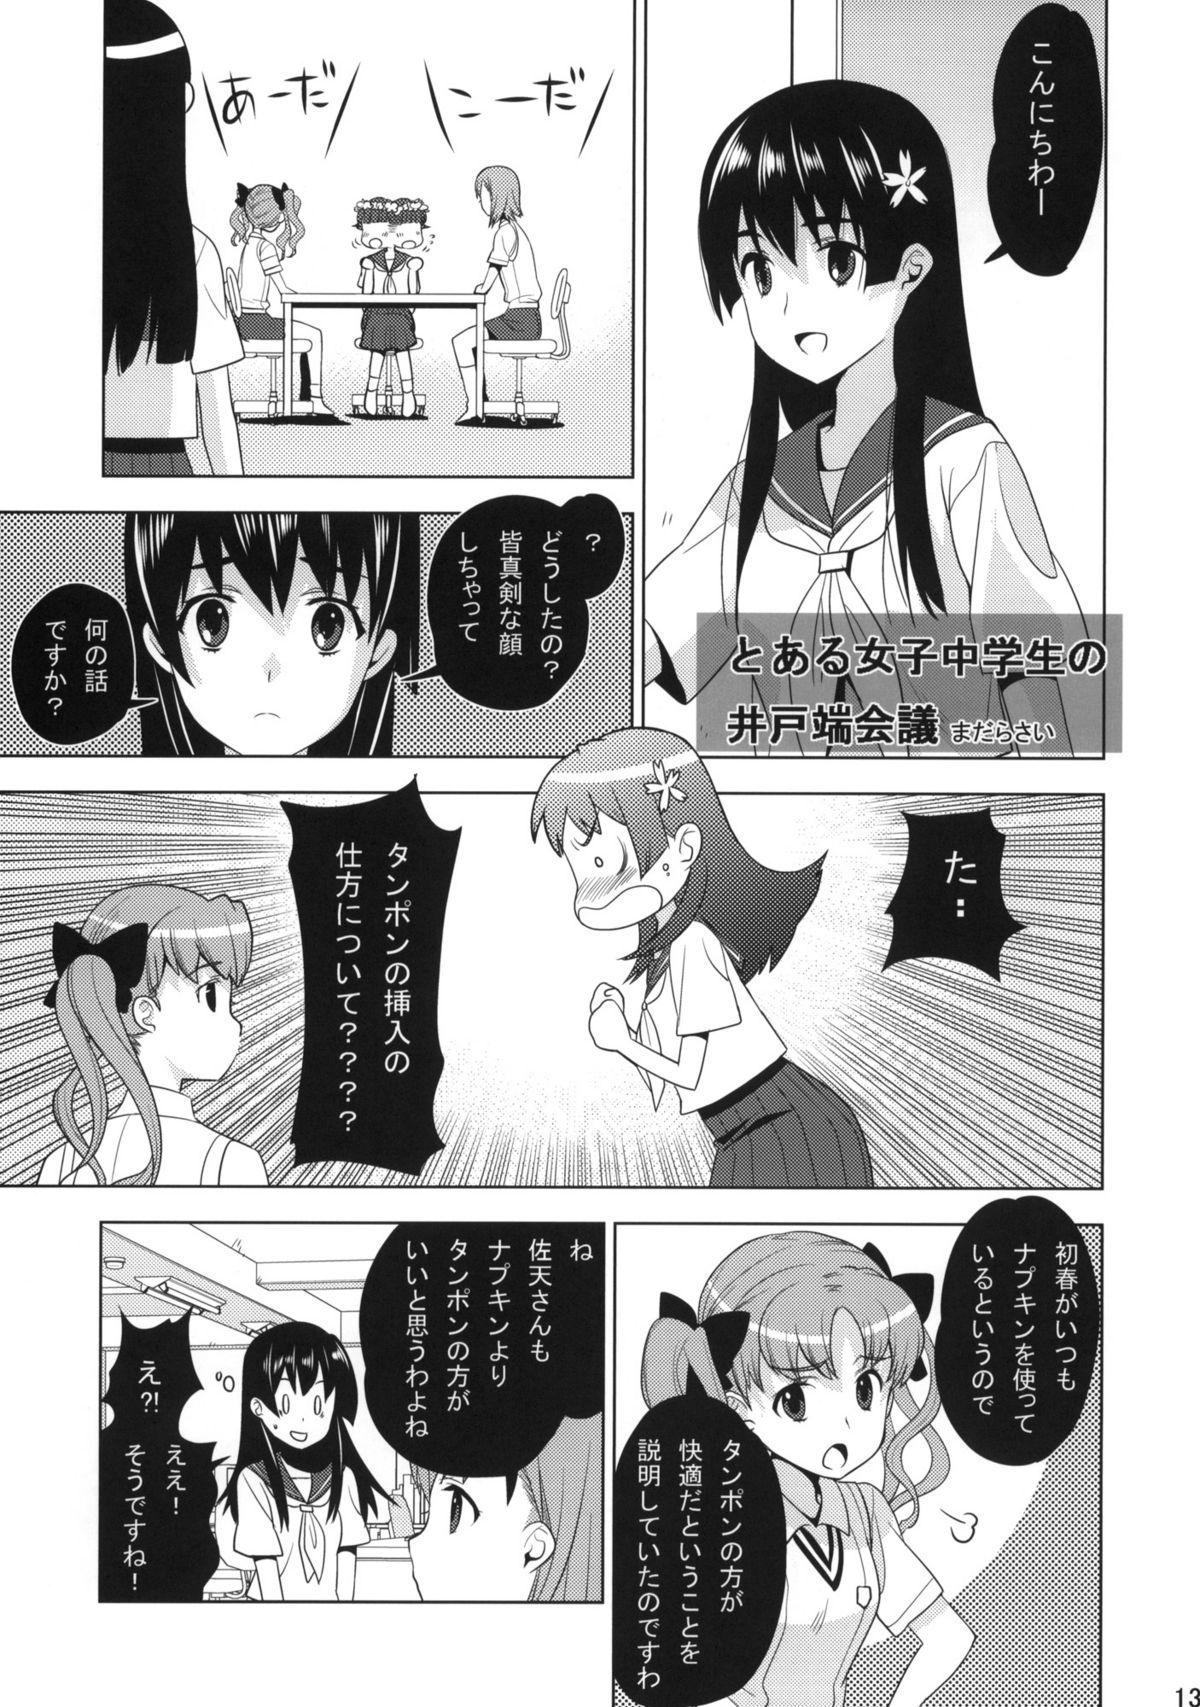 Caliente Toaru Gakusei no lacegun - Toaru kagaku no railgun Short - Page 11